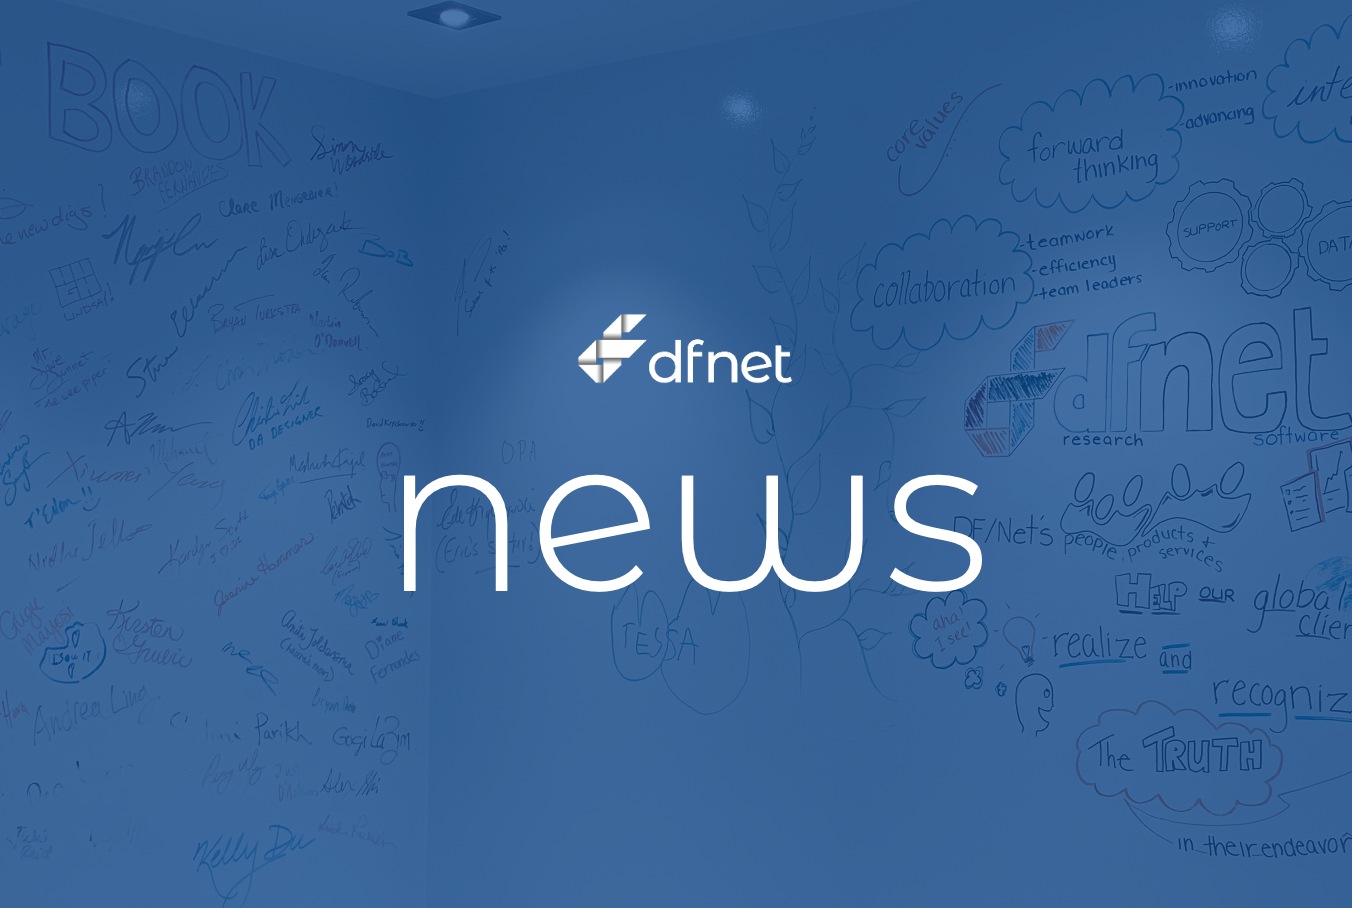 DFnet news